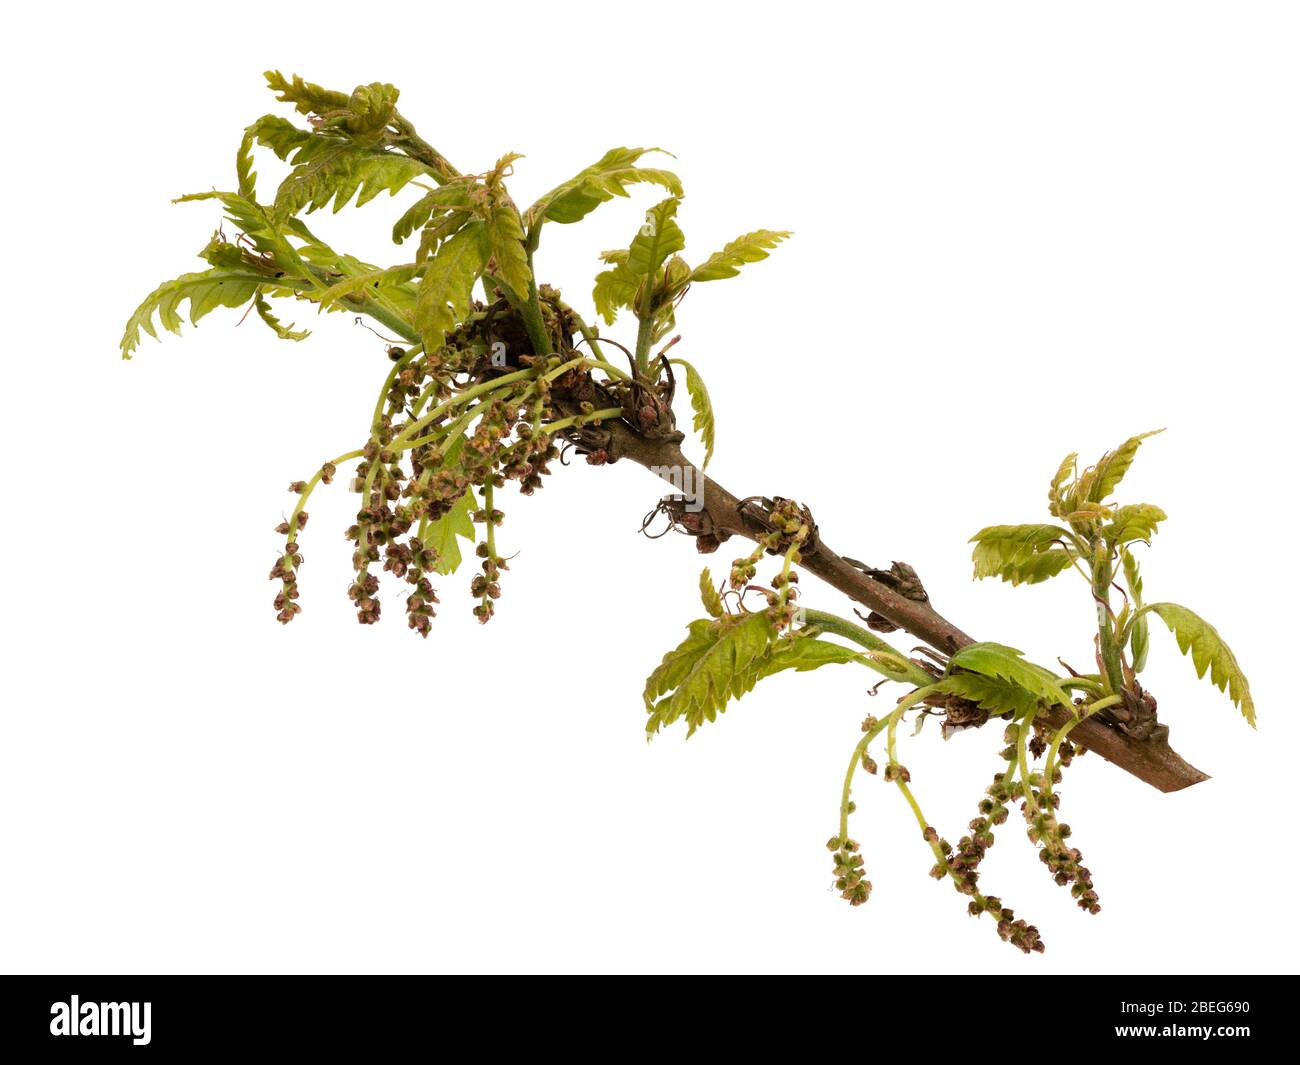 Fleurs pollinisées par le vent et le feuillage émergeant du chêne sessile indigène du Royaume-Uni, Quercus petraea, sur fond blanc Banque D'Images